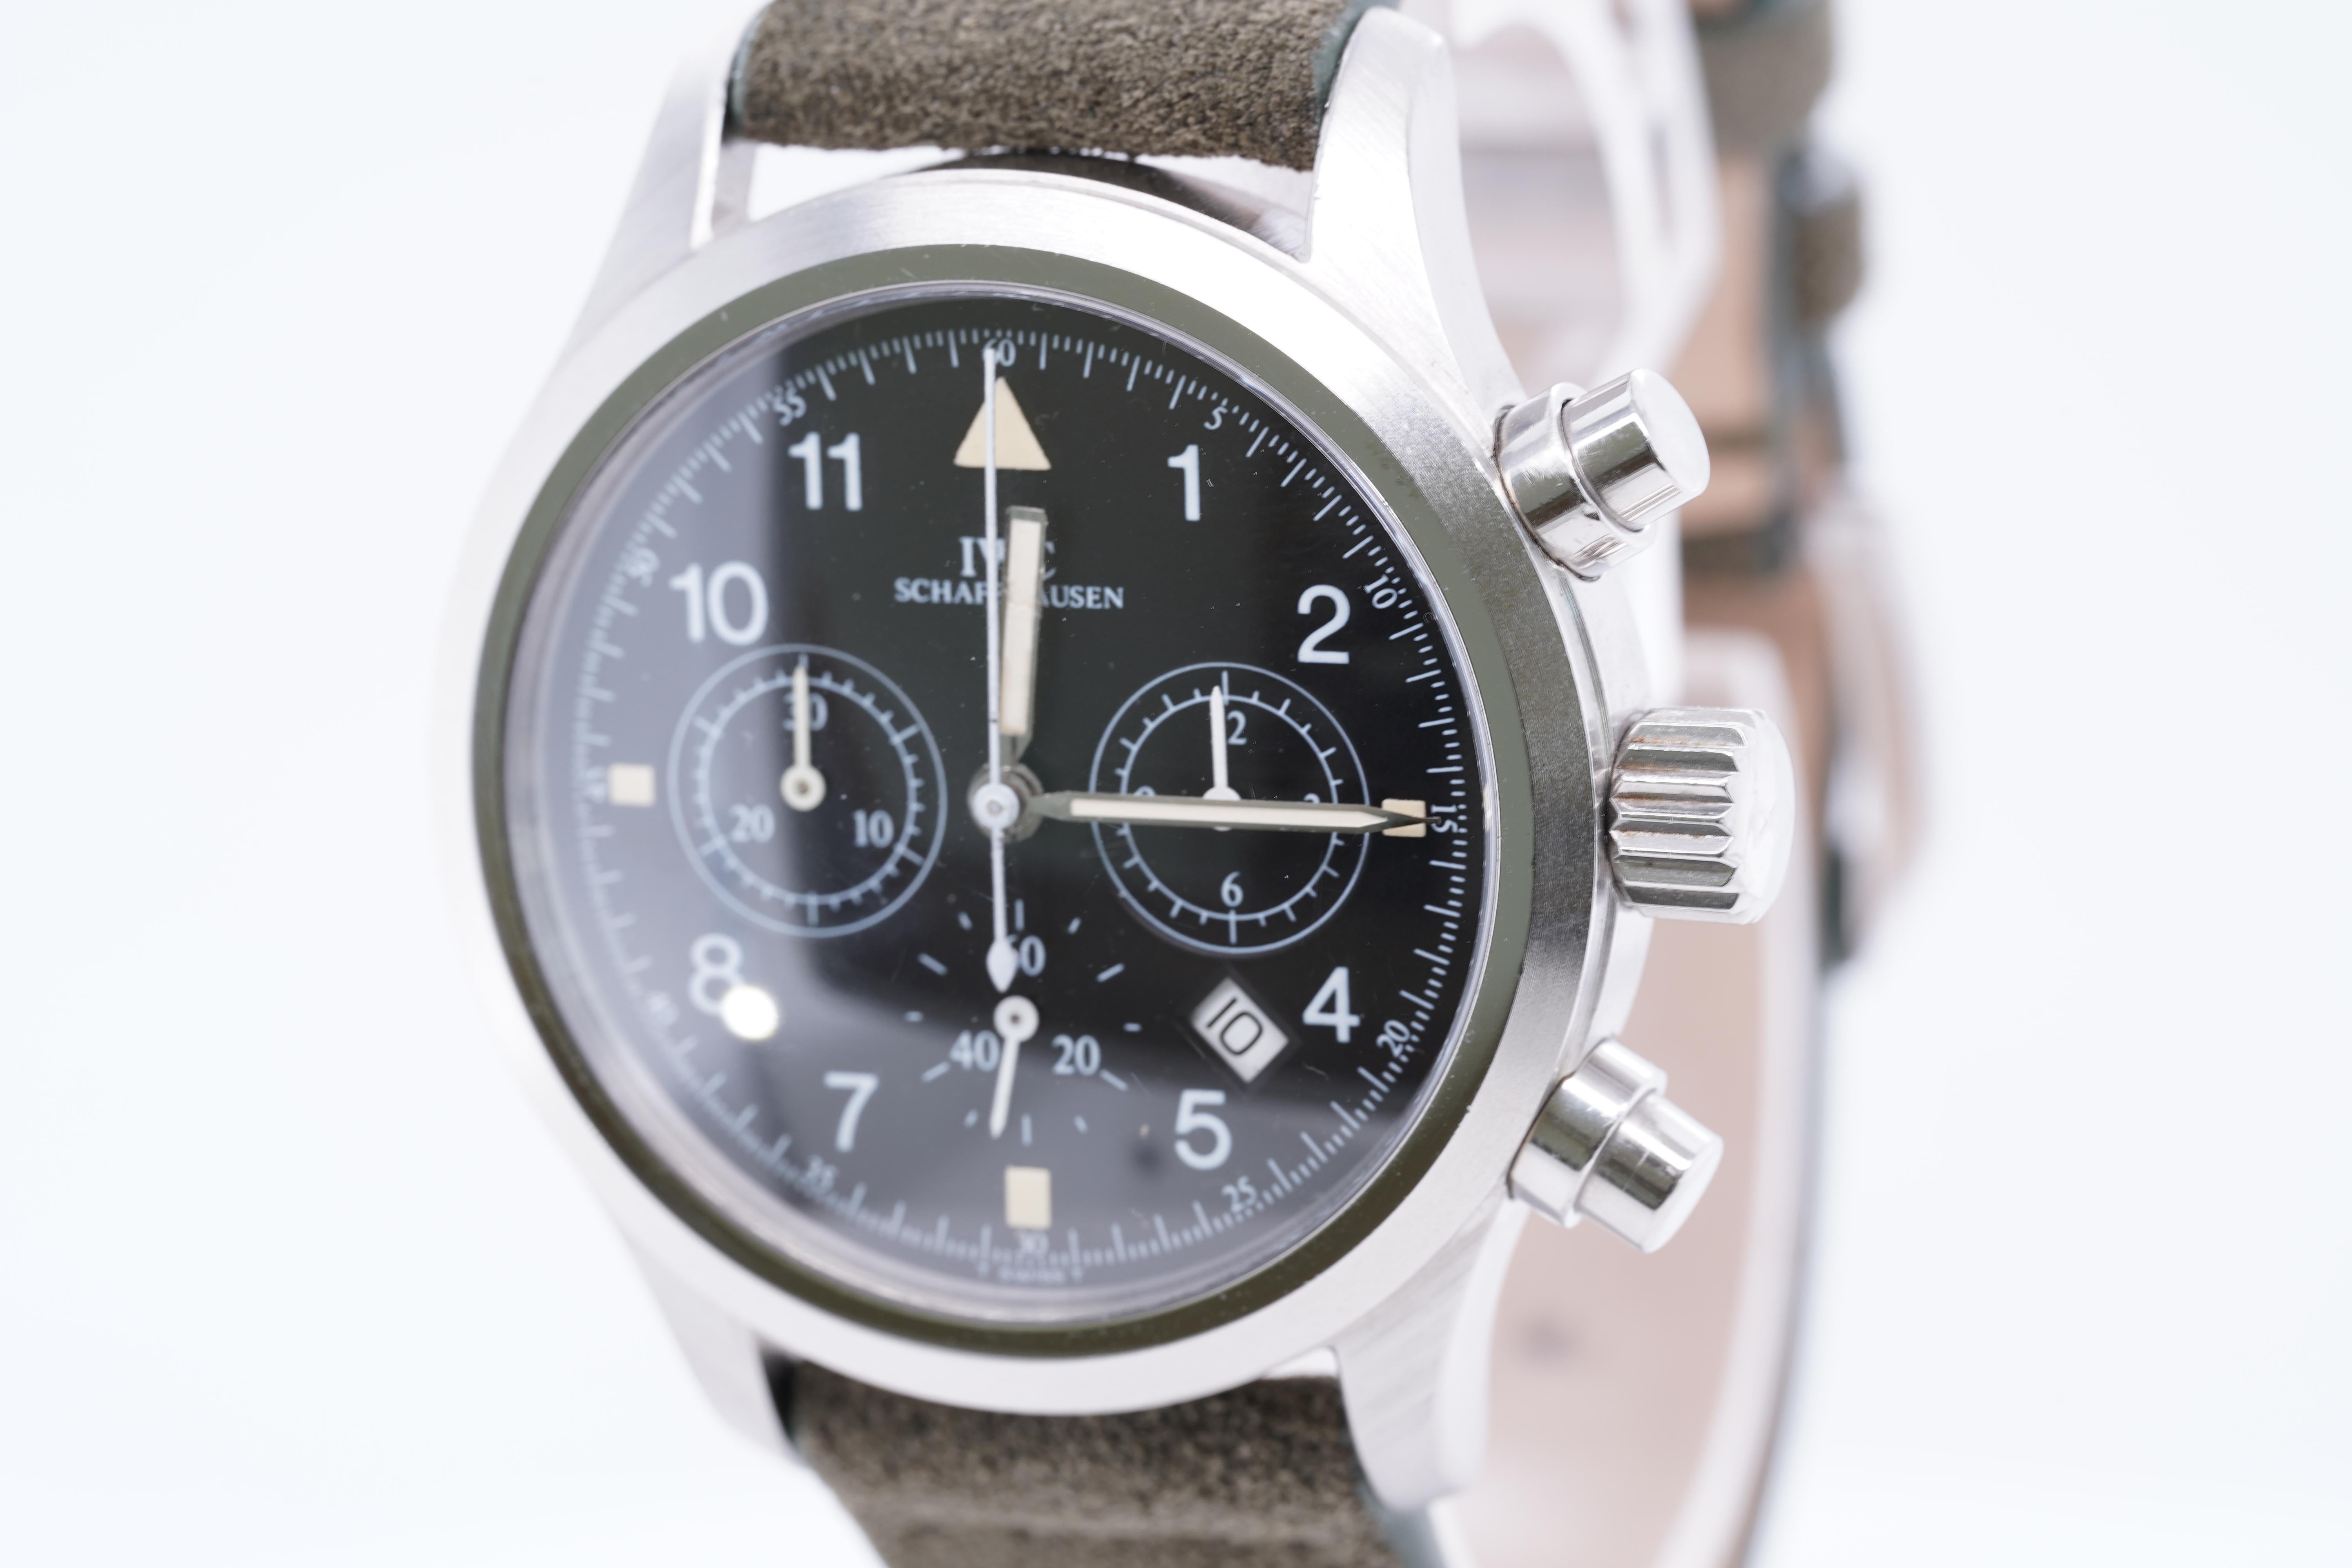 IWC Schaffhausen Fliegerchronograph Pilot's Watch Suede Strap Orig Box 1